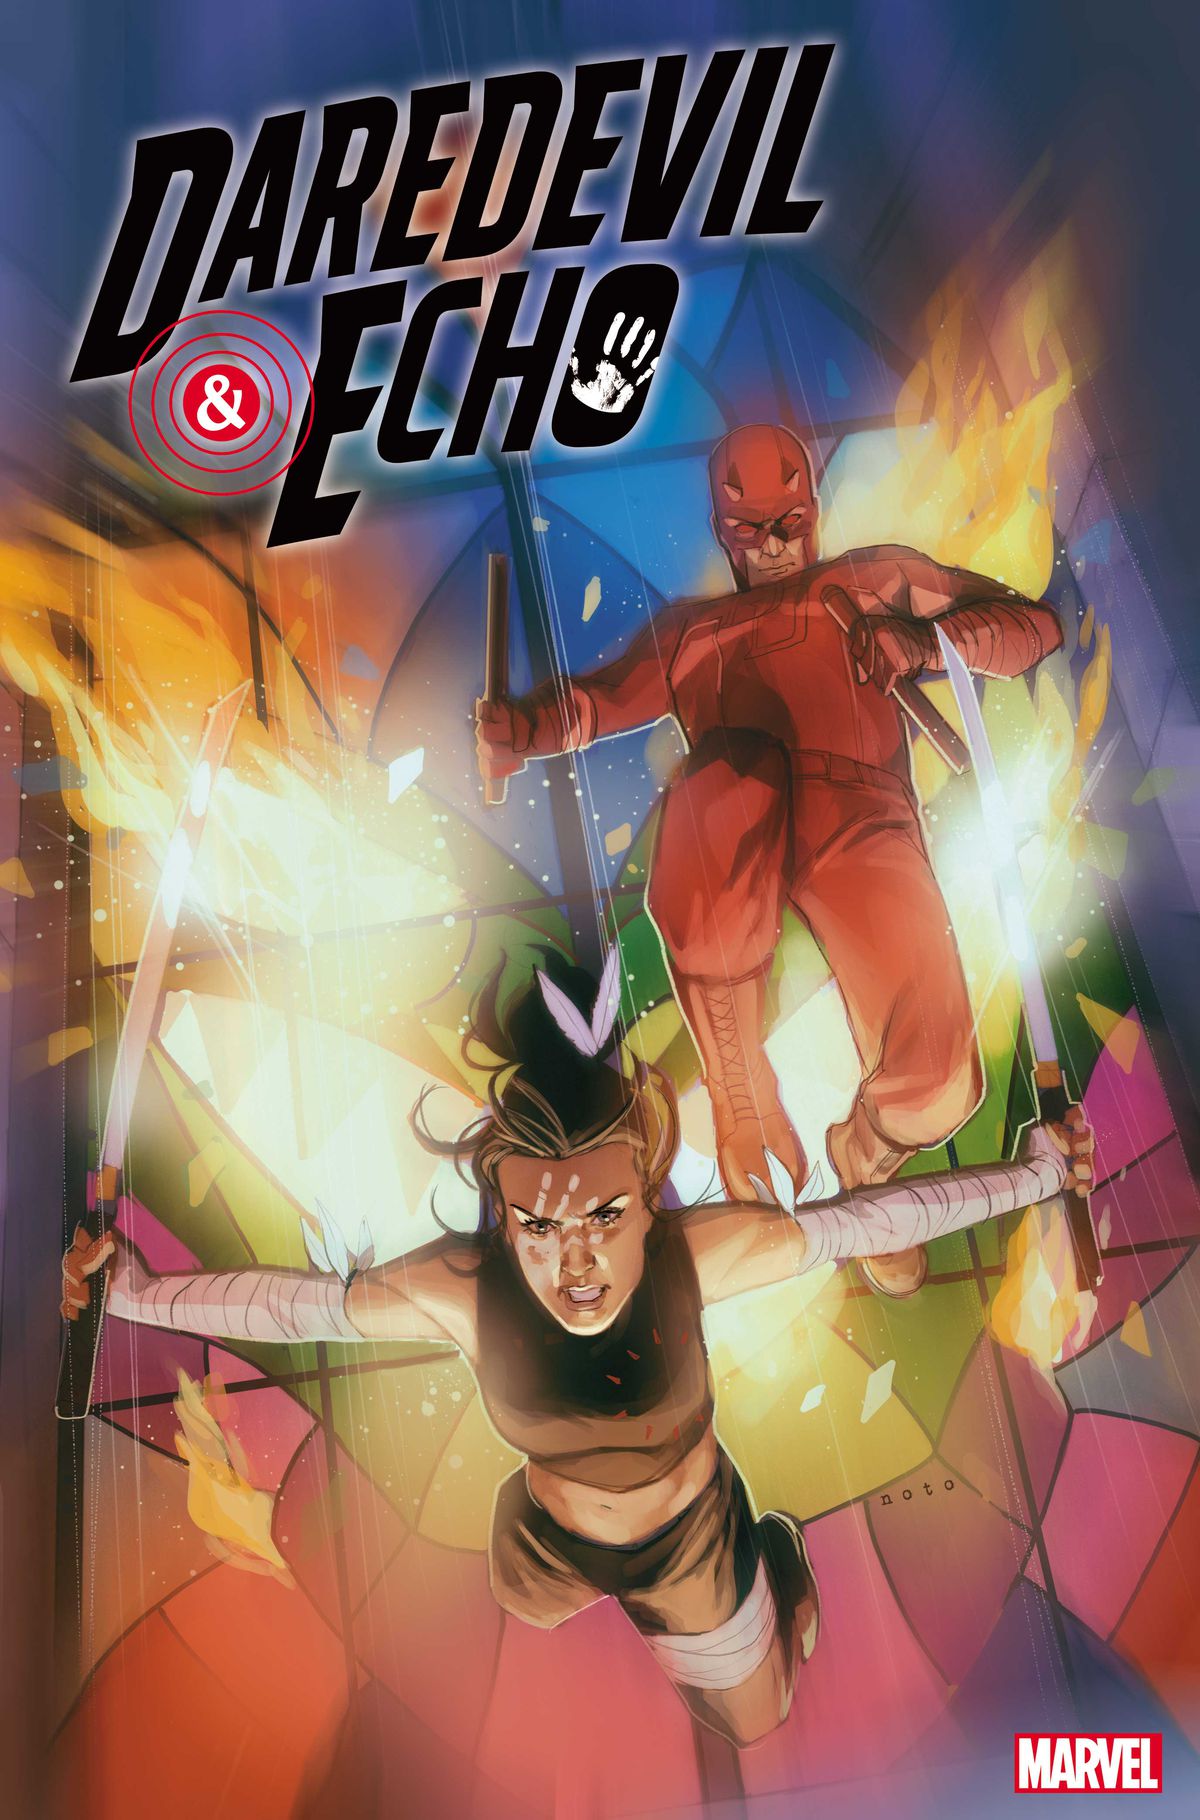 Echo e Daredevil esplodono attraverso un dolore di vetro colorato pronti per la battaglia nella copertina di Daredevil & Echo # 1